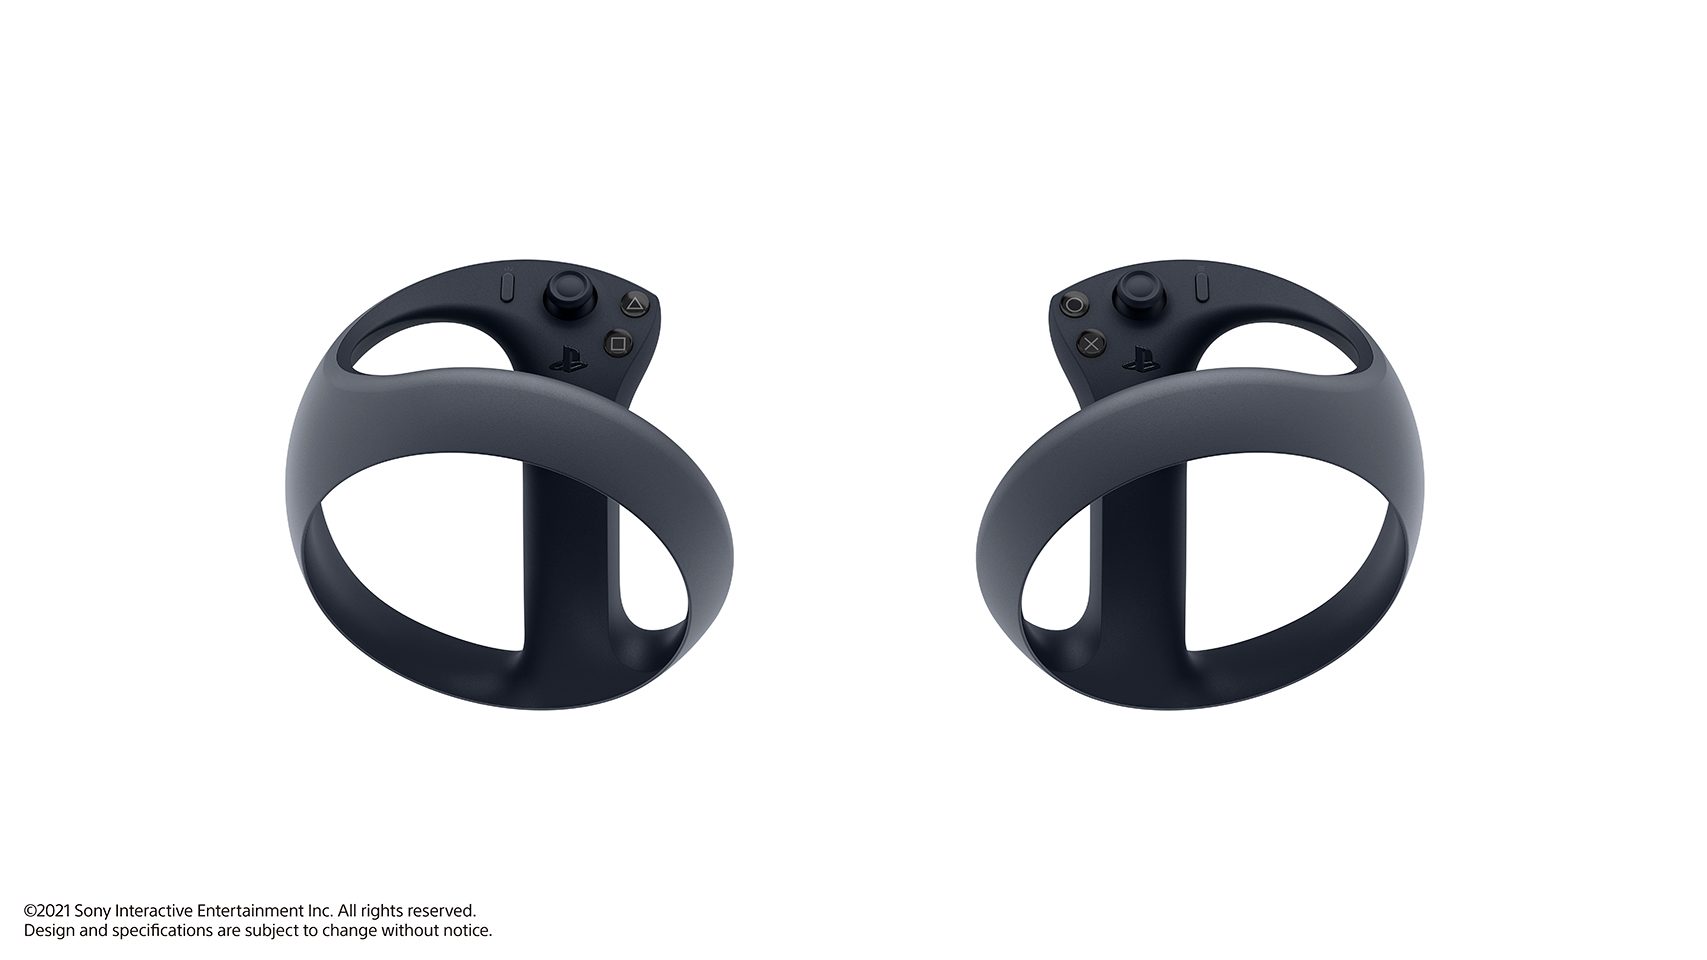 Sony annuncia i nuovi controller VR per PS5 con trigger adattivi -  PlayBlog.it